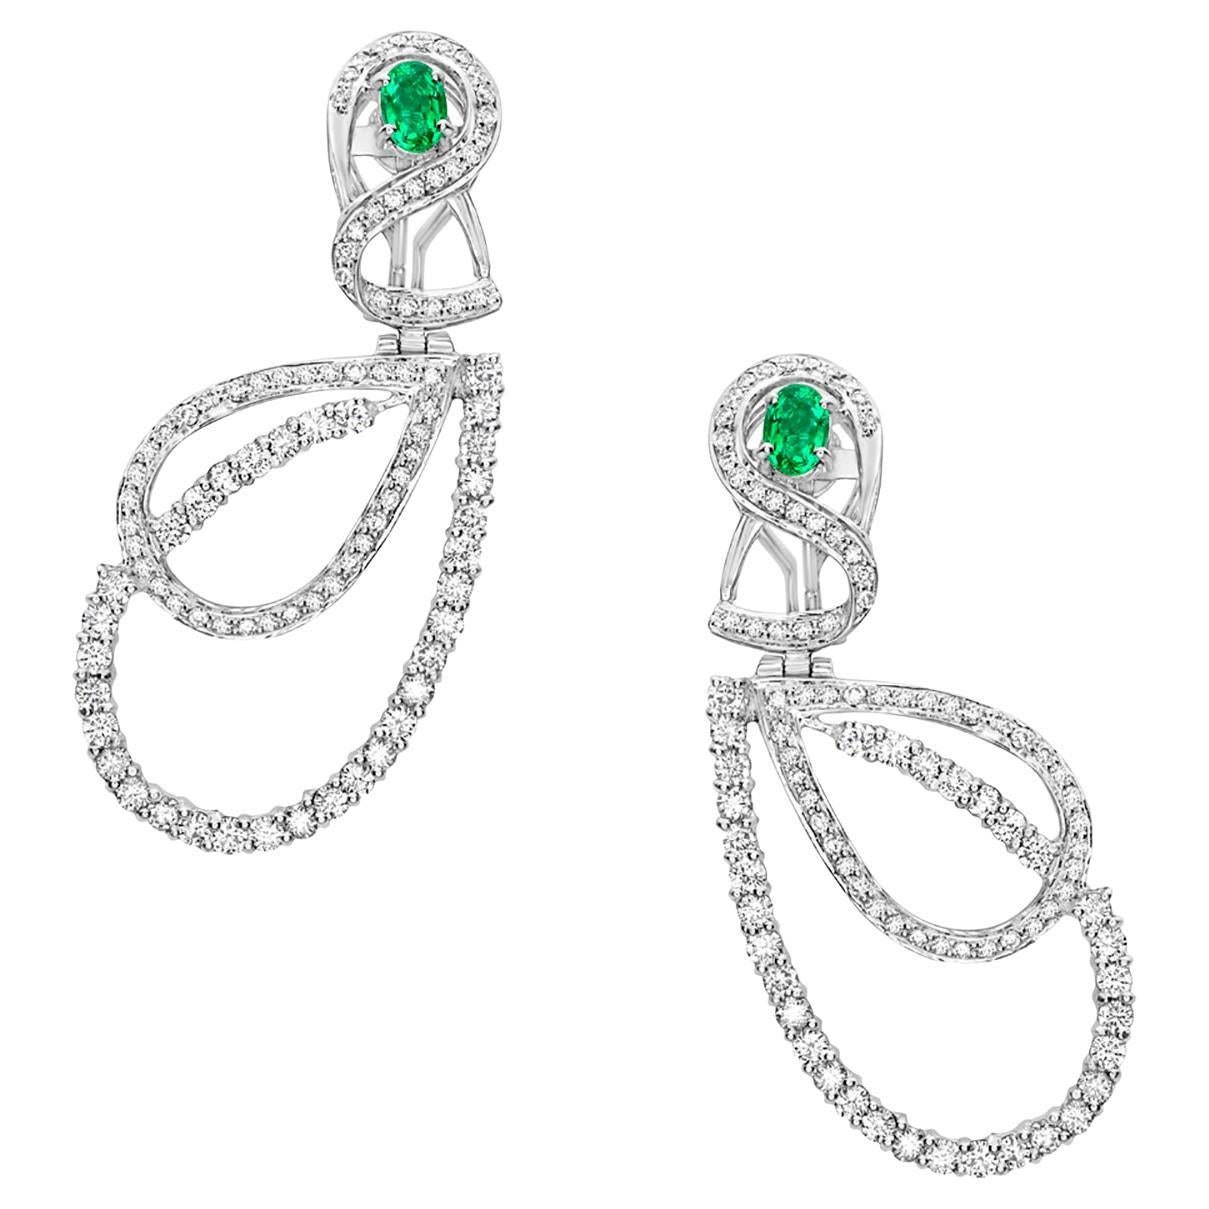 Teardrop Shaped Earrings With Zambian Emerald & Diamonds Made In 18k White Gold